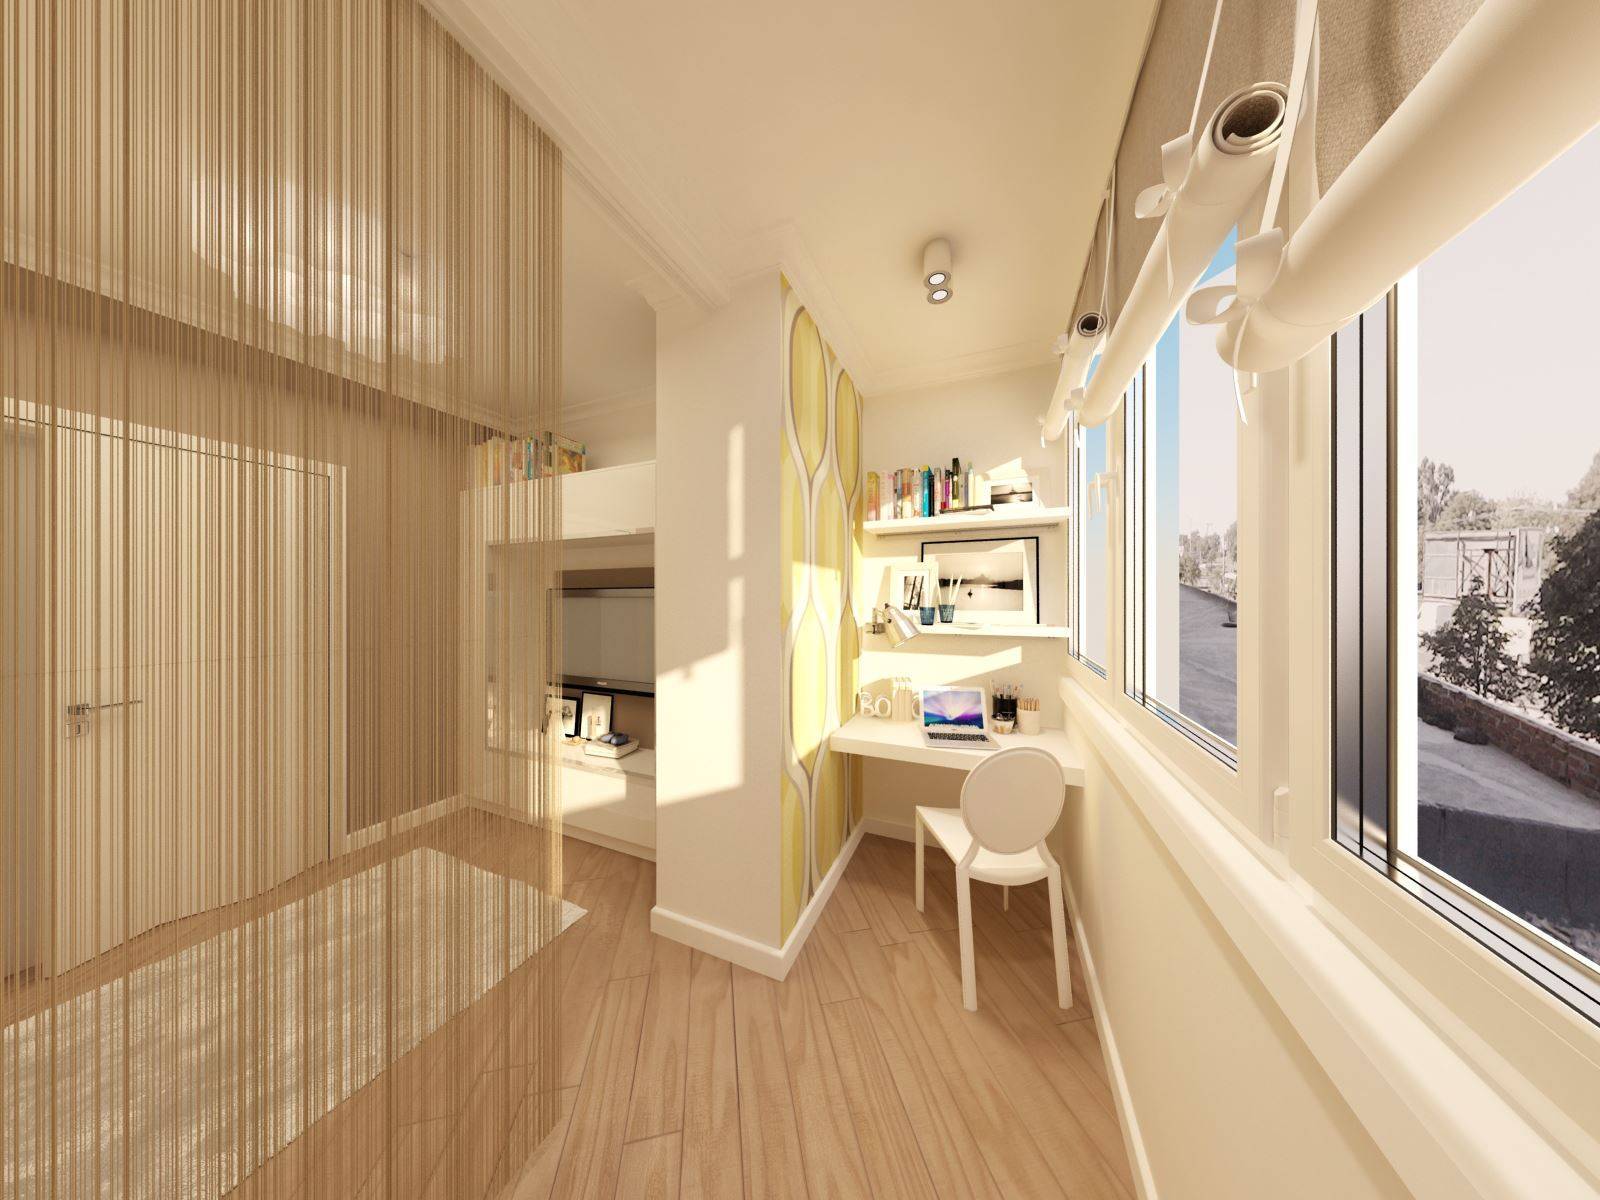 Балкон, совмещенный с комнатой: фото и особенности дизайна, как сделать объединение лоджии и комнаты